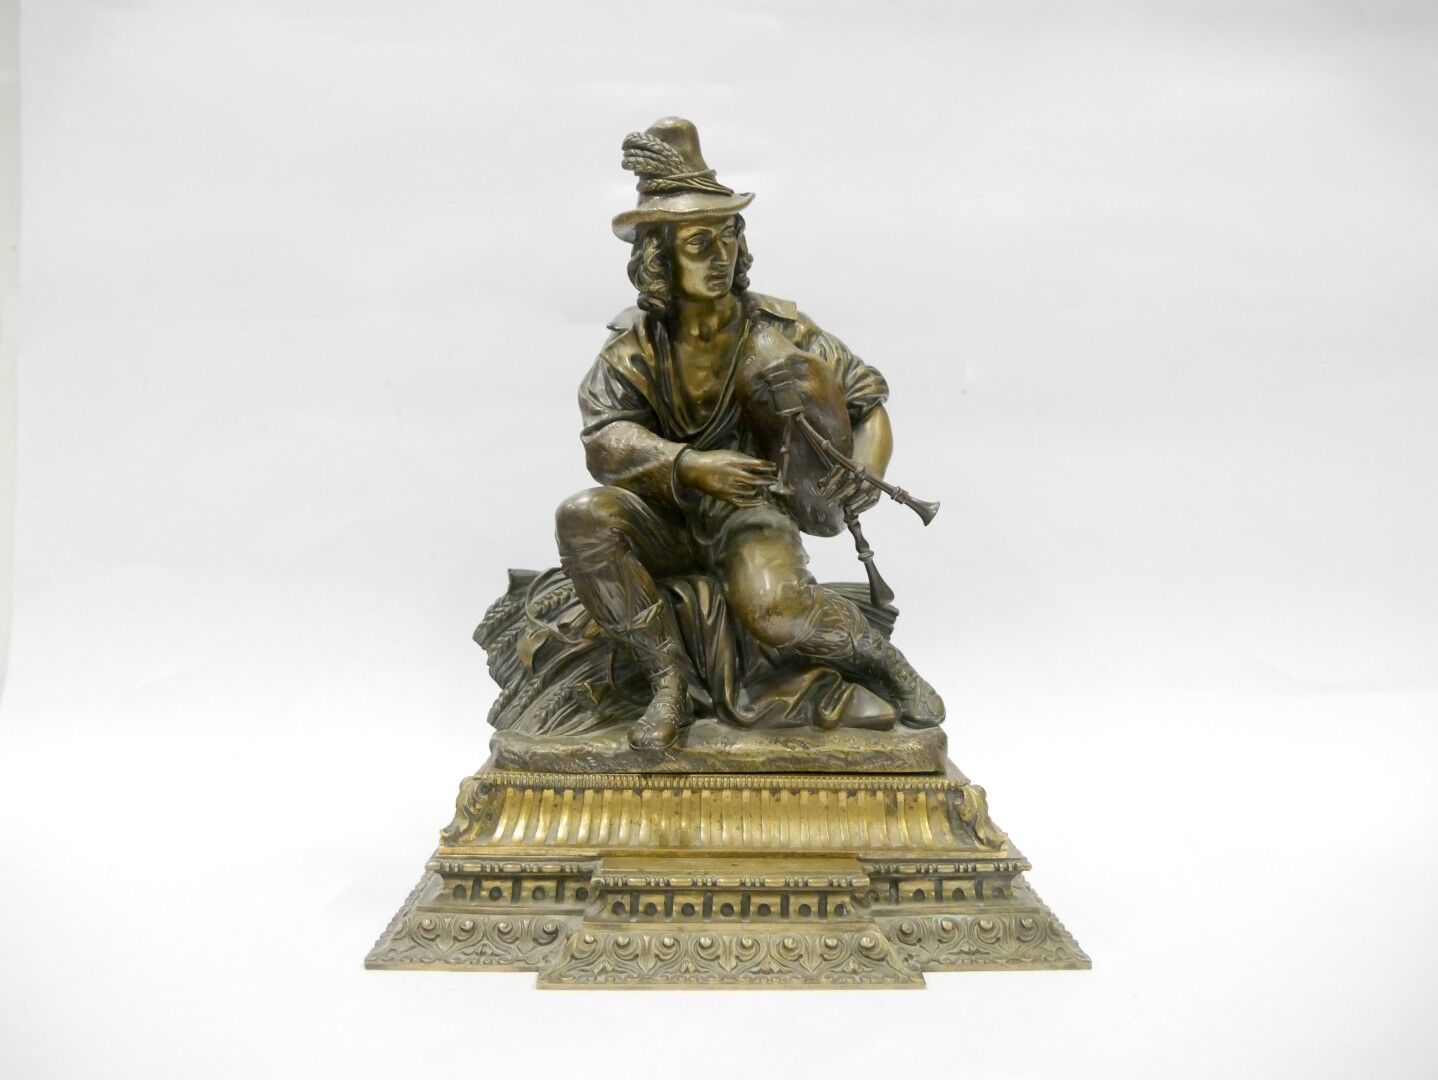 Null 19世纪末-20世纪初

吹笛子的人

青铜雕塑 

两个镀金的铜质底座

总高度：31厘米。约12英寸

三个独立的元素，其中一个角站了出来